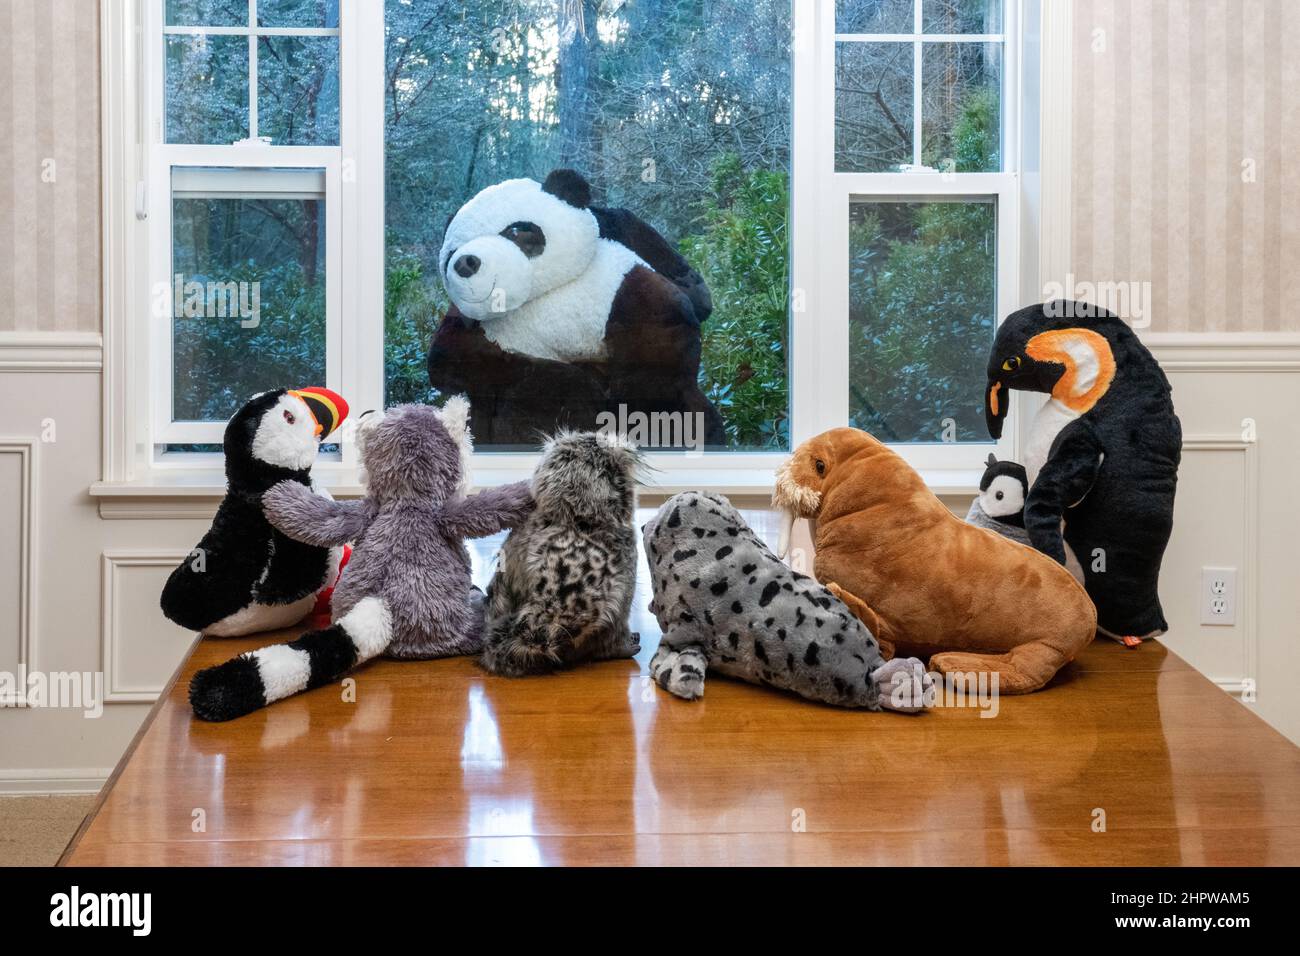 Ausgestopfte Tiere starren aus einem Fenster auf einen riesigen Pandabären, der sie ansieht! Stockfoto